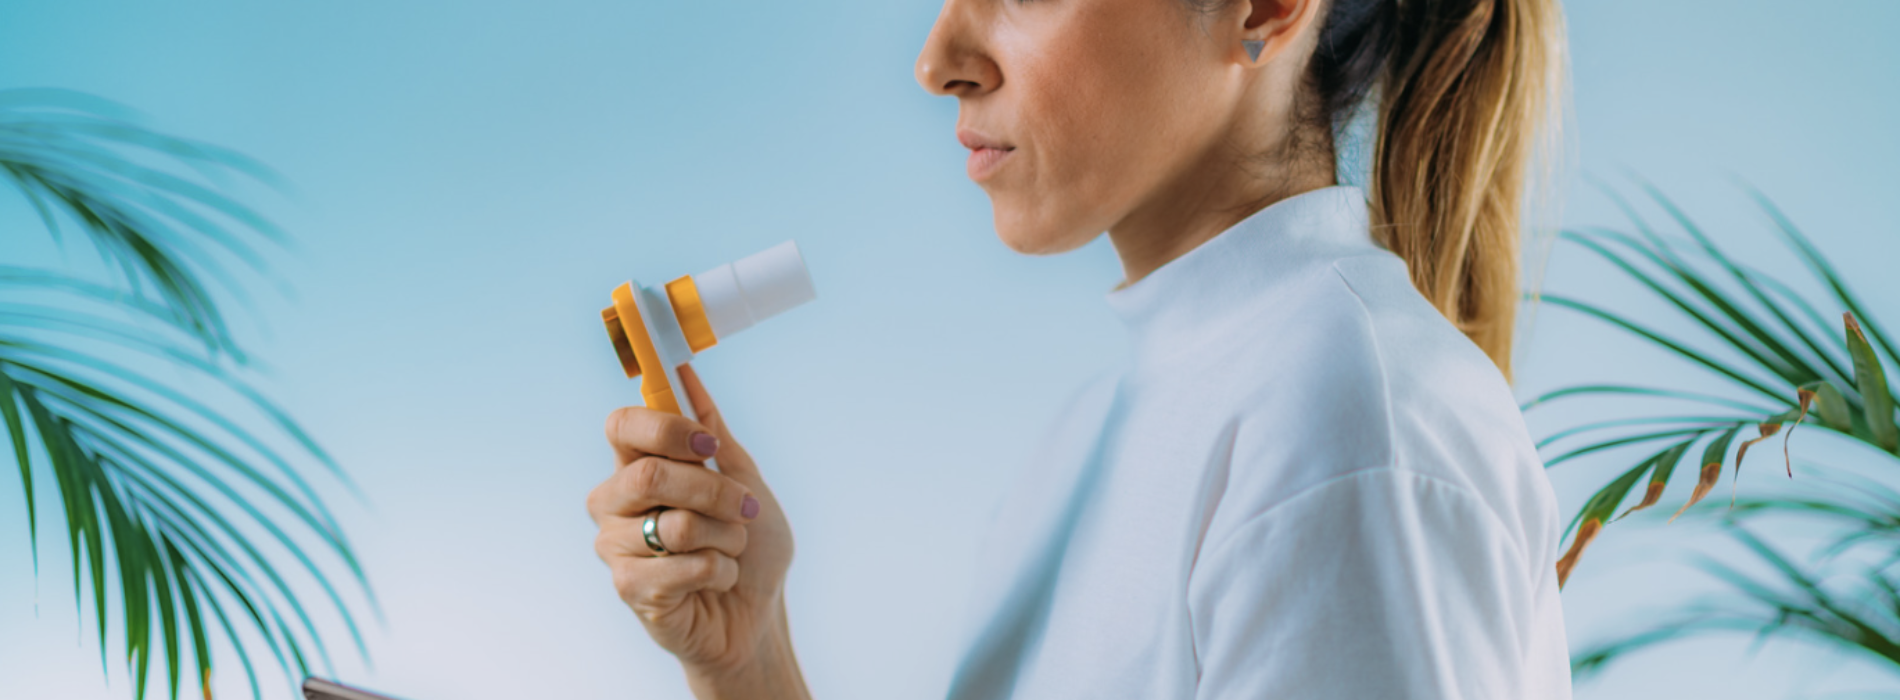 Spirometria per diagnosi respiratorie, si aggiornano i medici